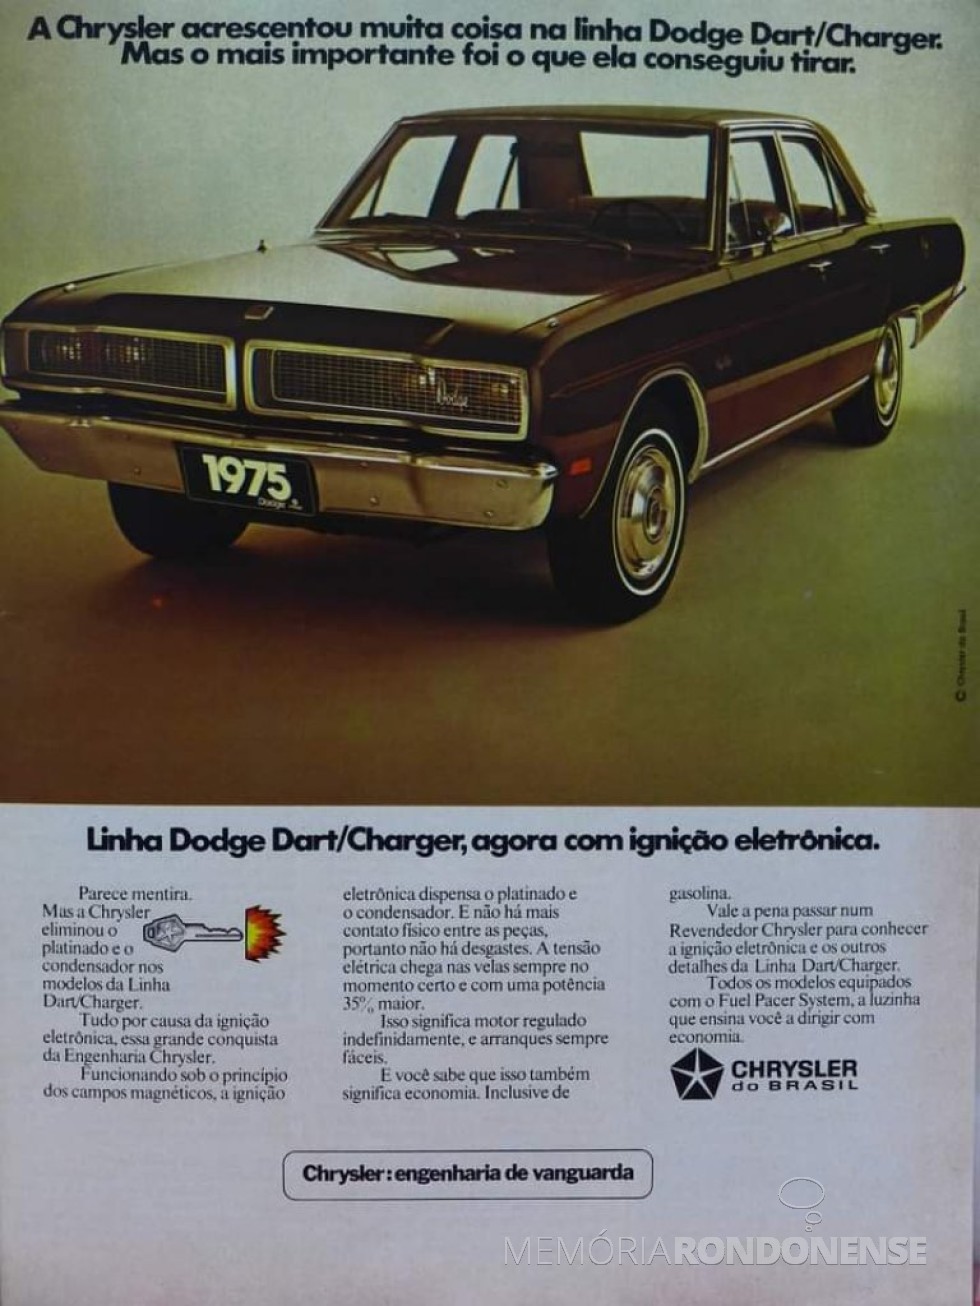 || Propaganda da Chrysler  de sua linha Doge Dart, na década de 1970.
Imagem: Acervo O Passado do Brasil - FOTO 9 - 